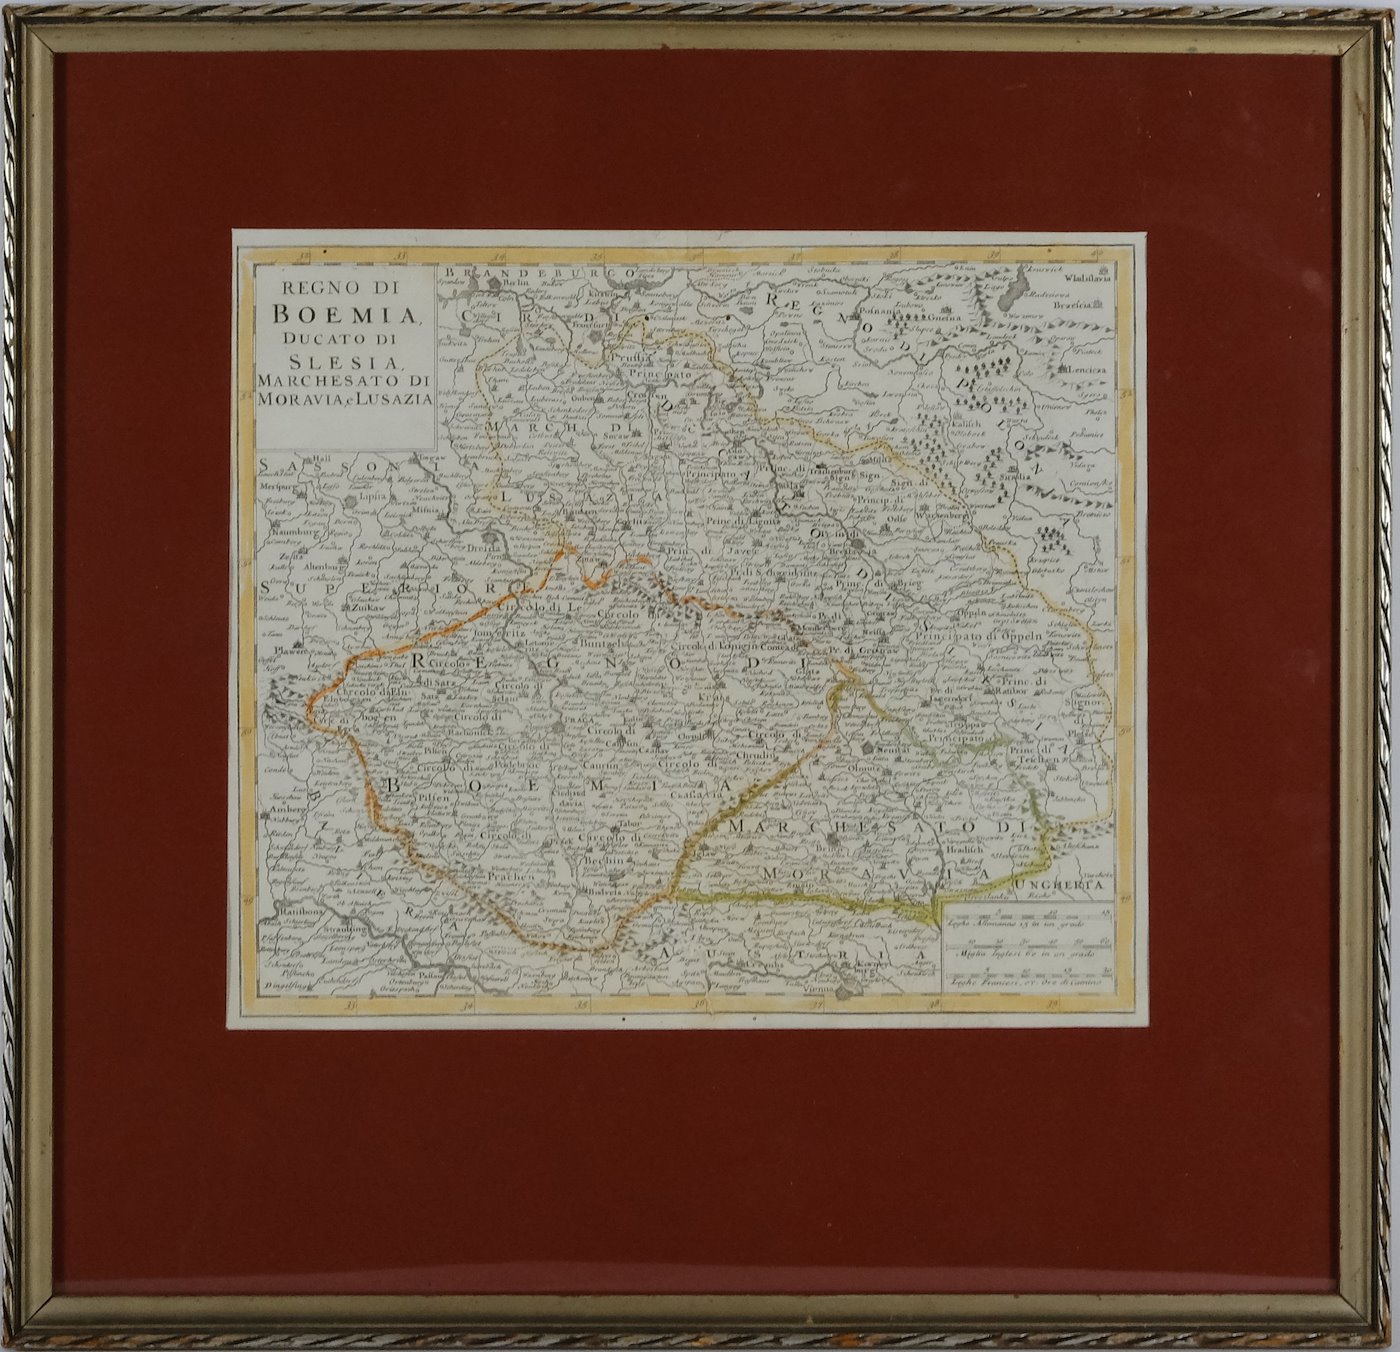 Albrizzi - Mapa - Země české